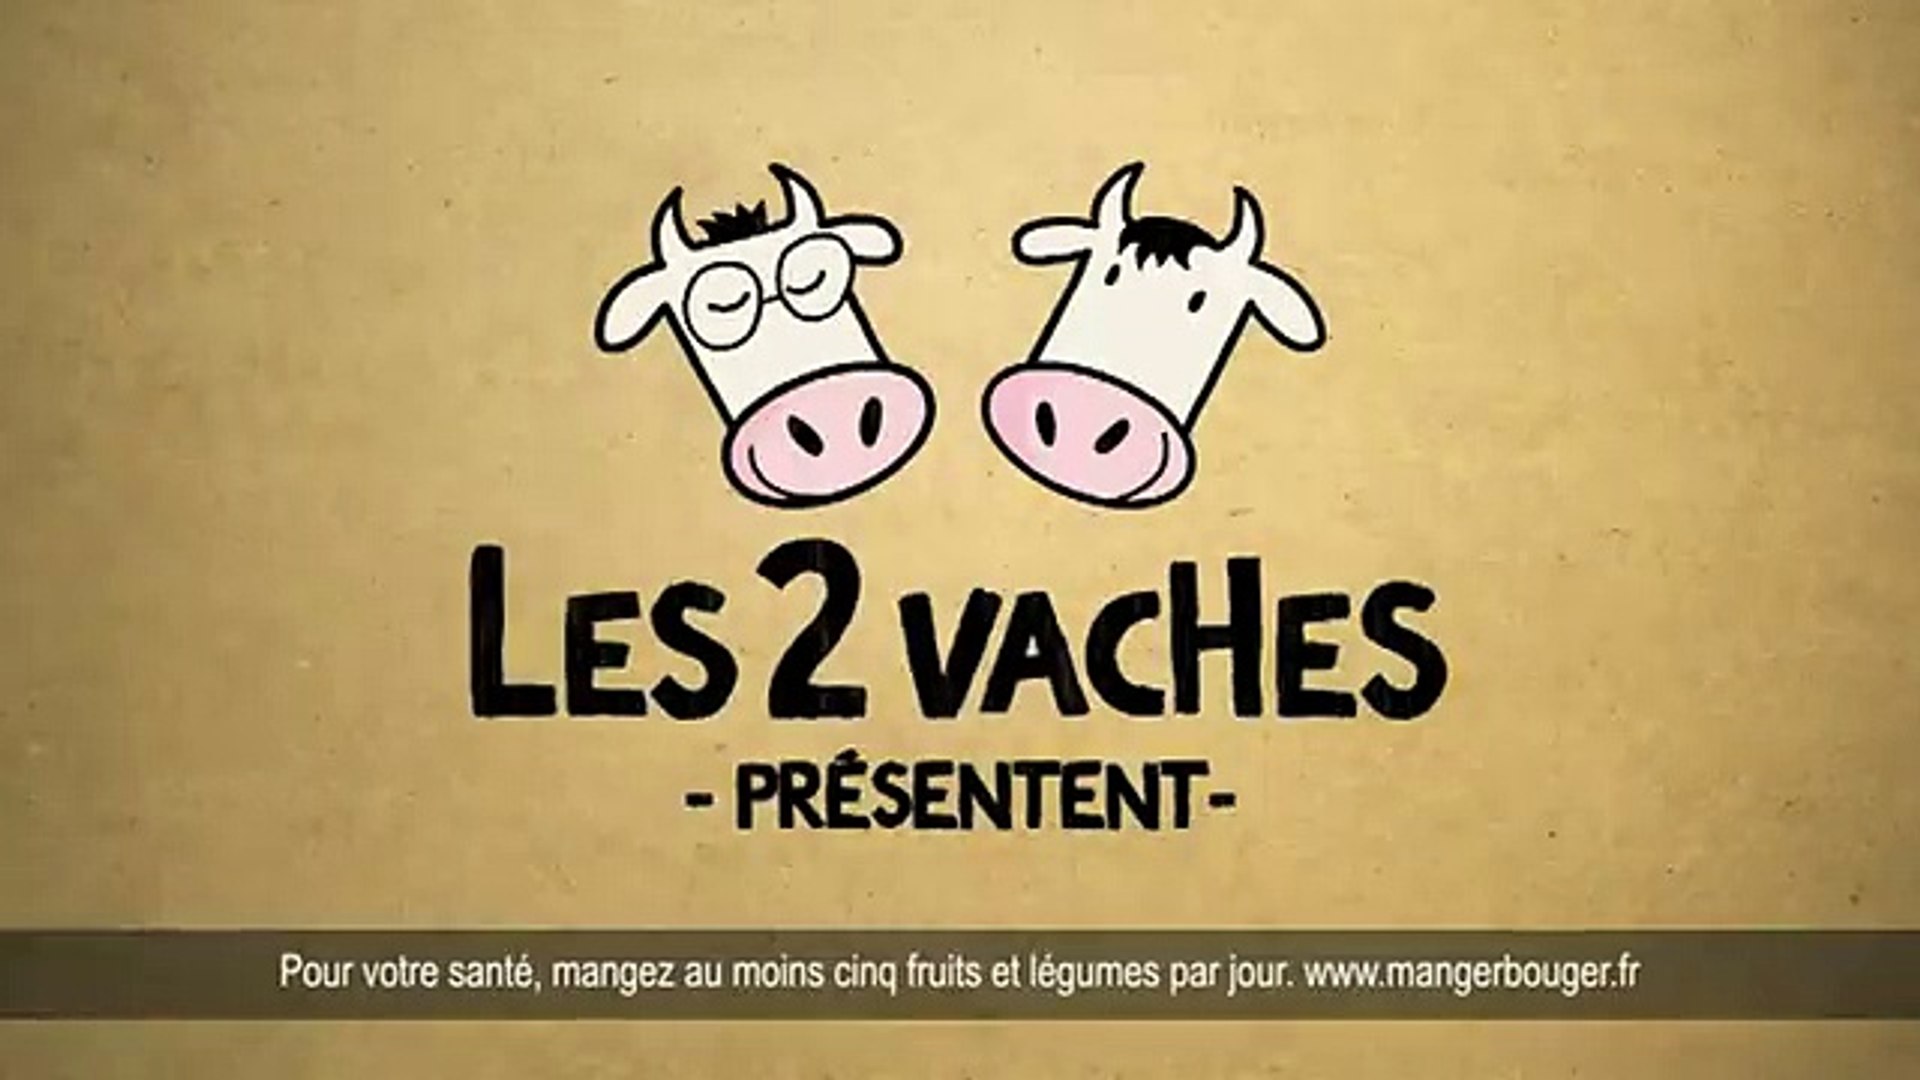 Les 2 Vaches - produits laitiers bio, "Plein air" - mars 2012 - Vidéo  Dailymotion